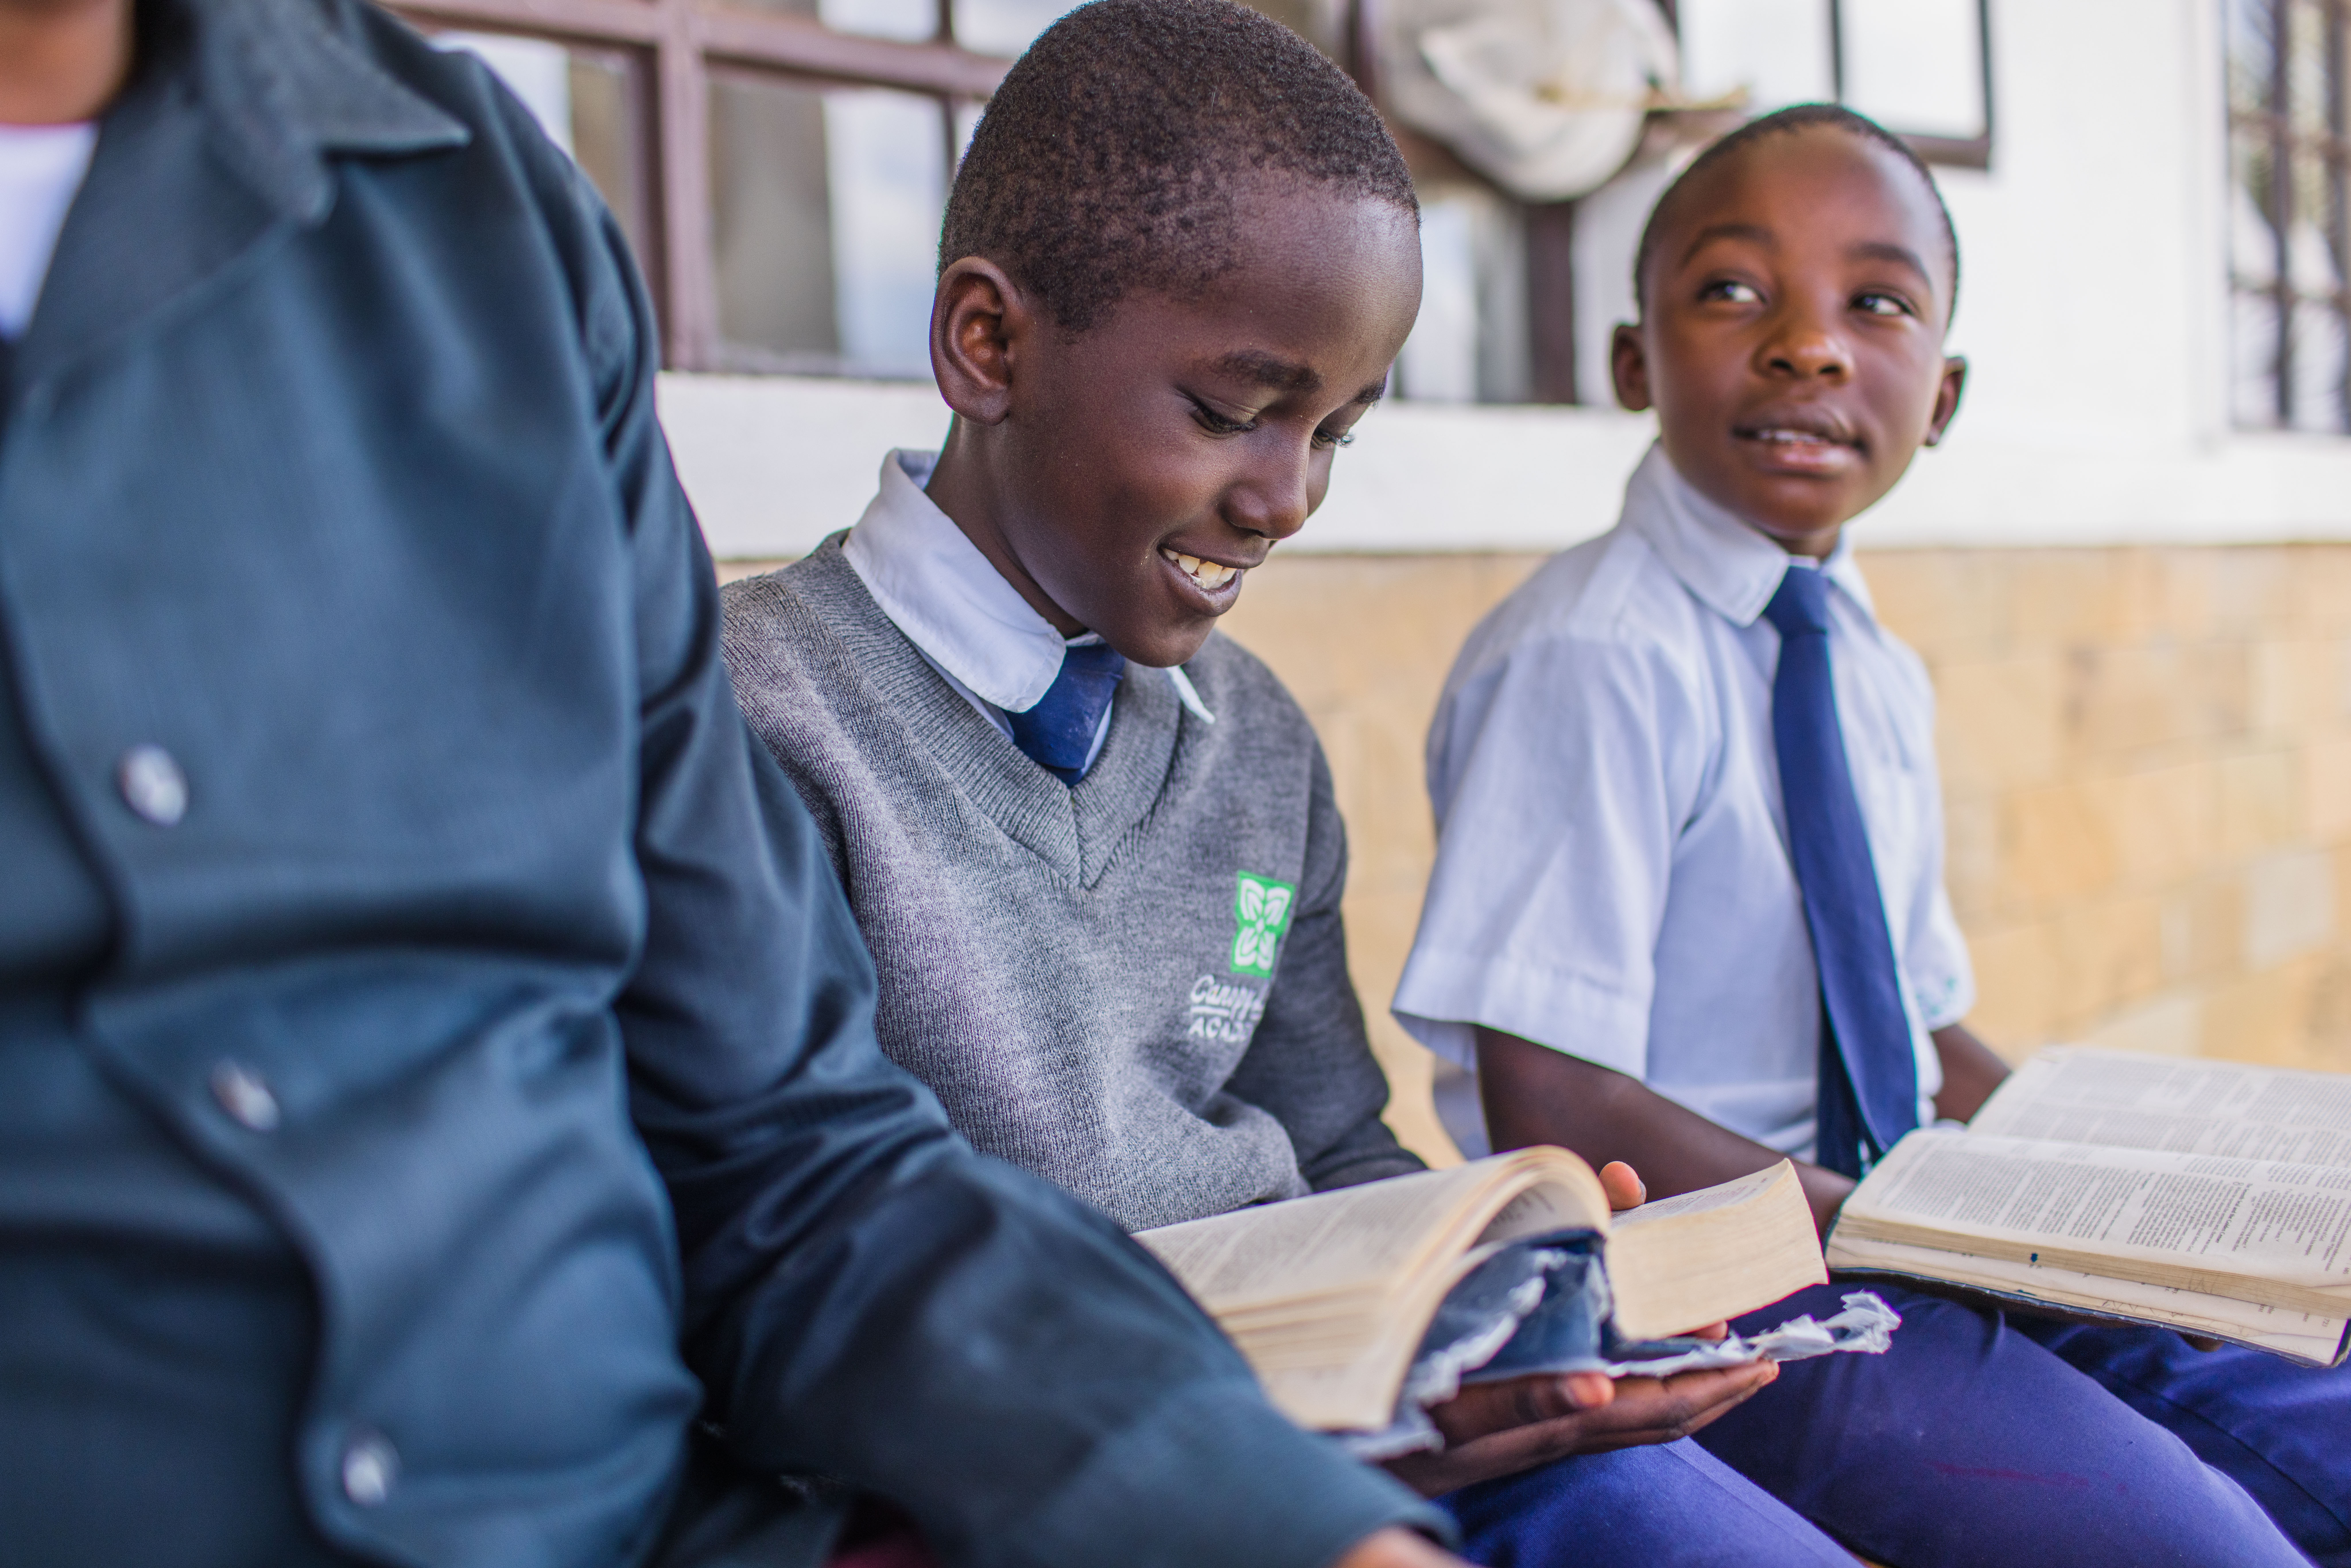 Campus updates on the spiritual program, kids in Kenya studying the Bible